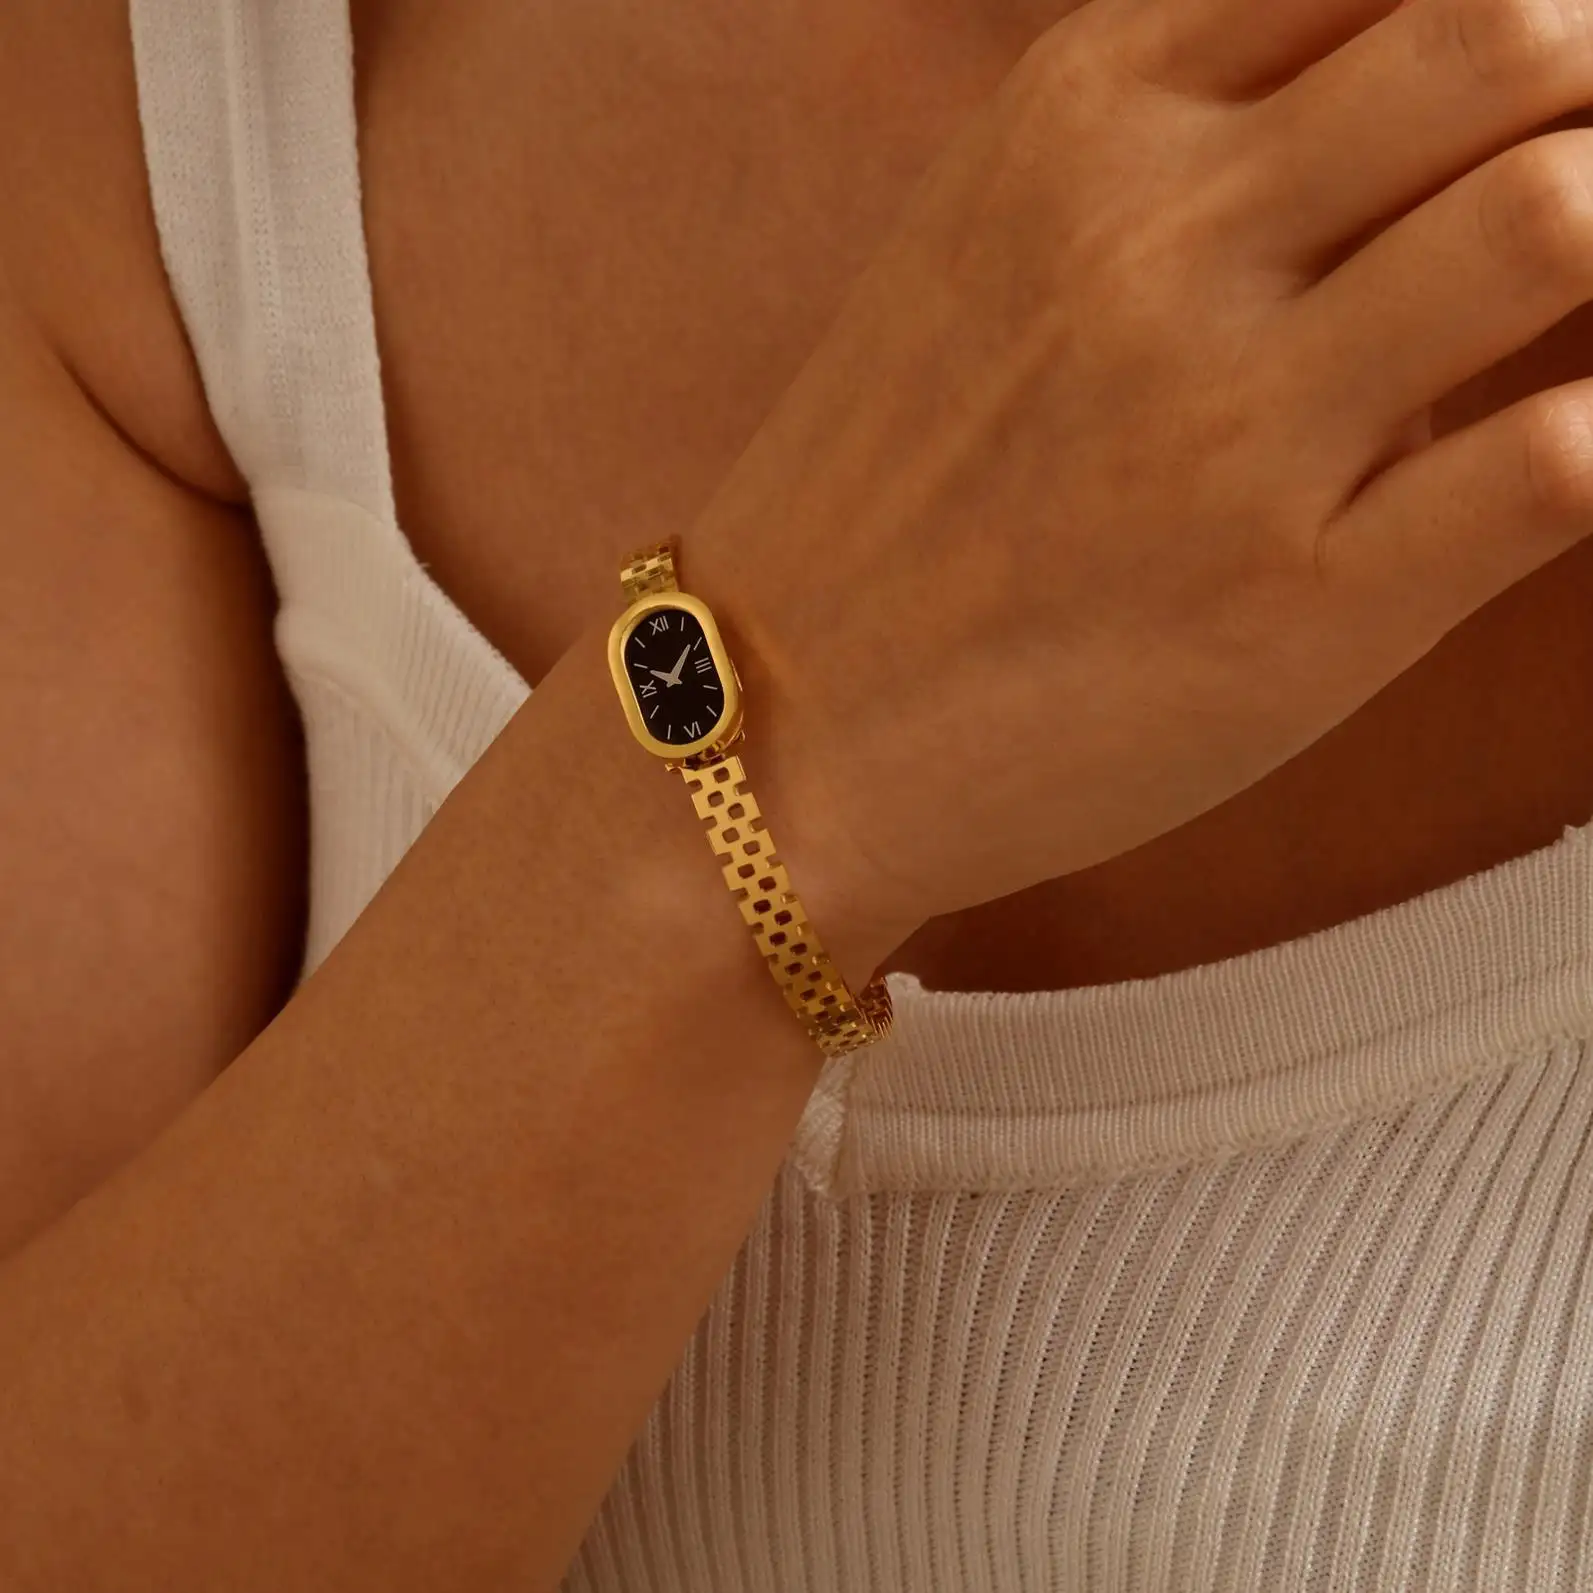 Tryme Watch a forma di braccialetto da donna, bracciale in acciaio inossidabile Color oro, braccialetto elegante da donna